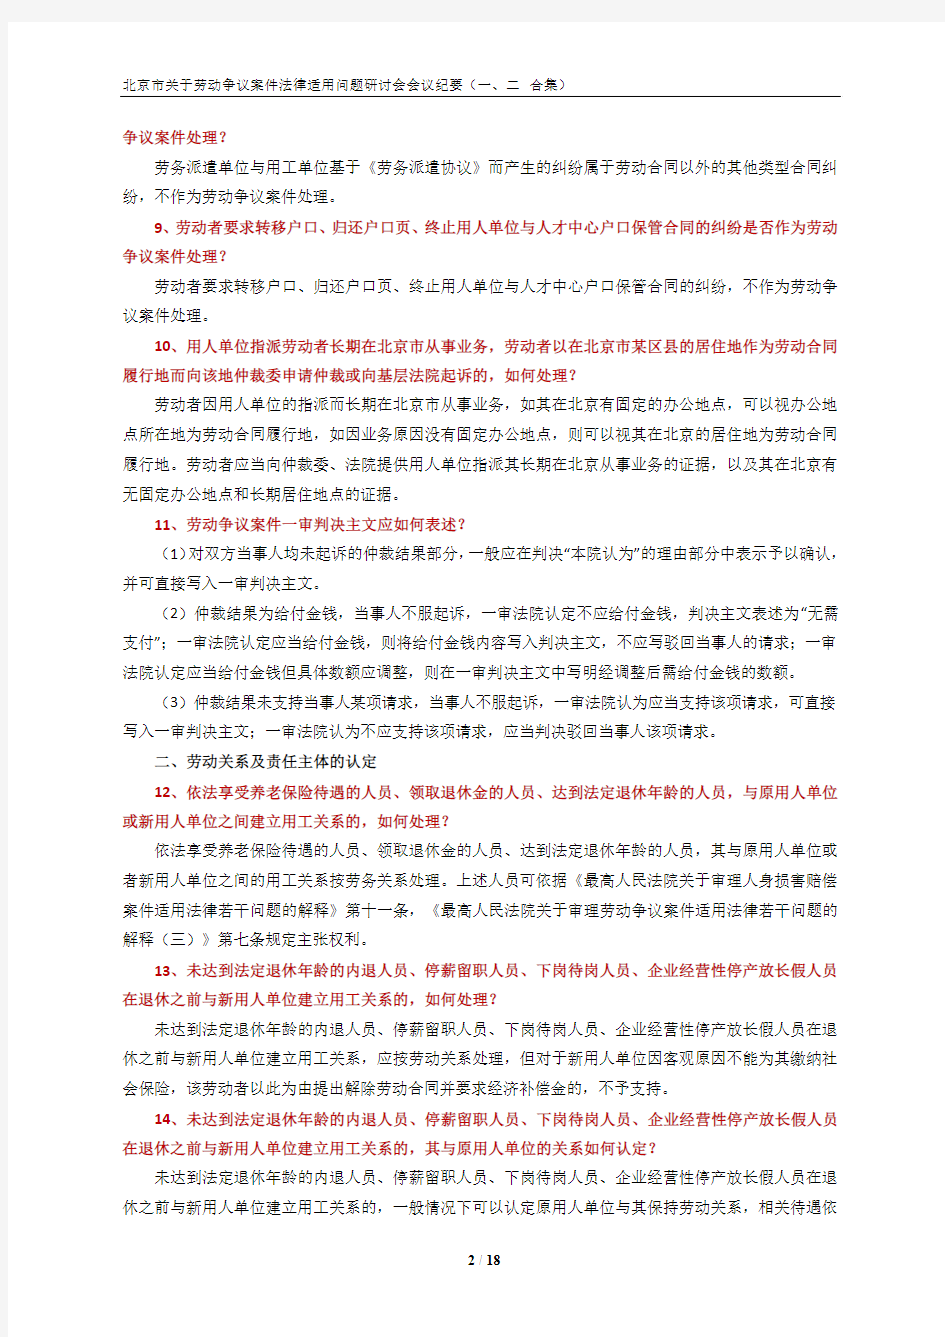 北京市关于劳动争议案件法律适用问题研讨会会议纪要(一、二合集)